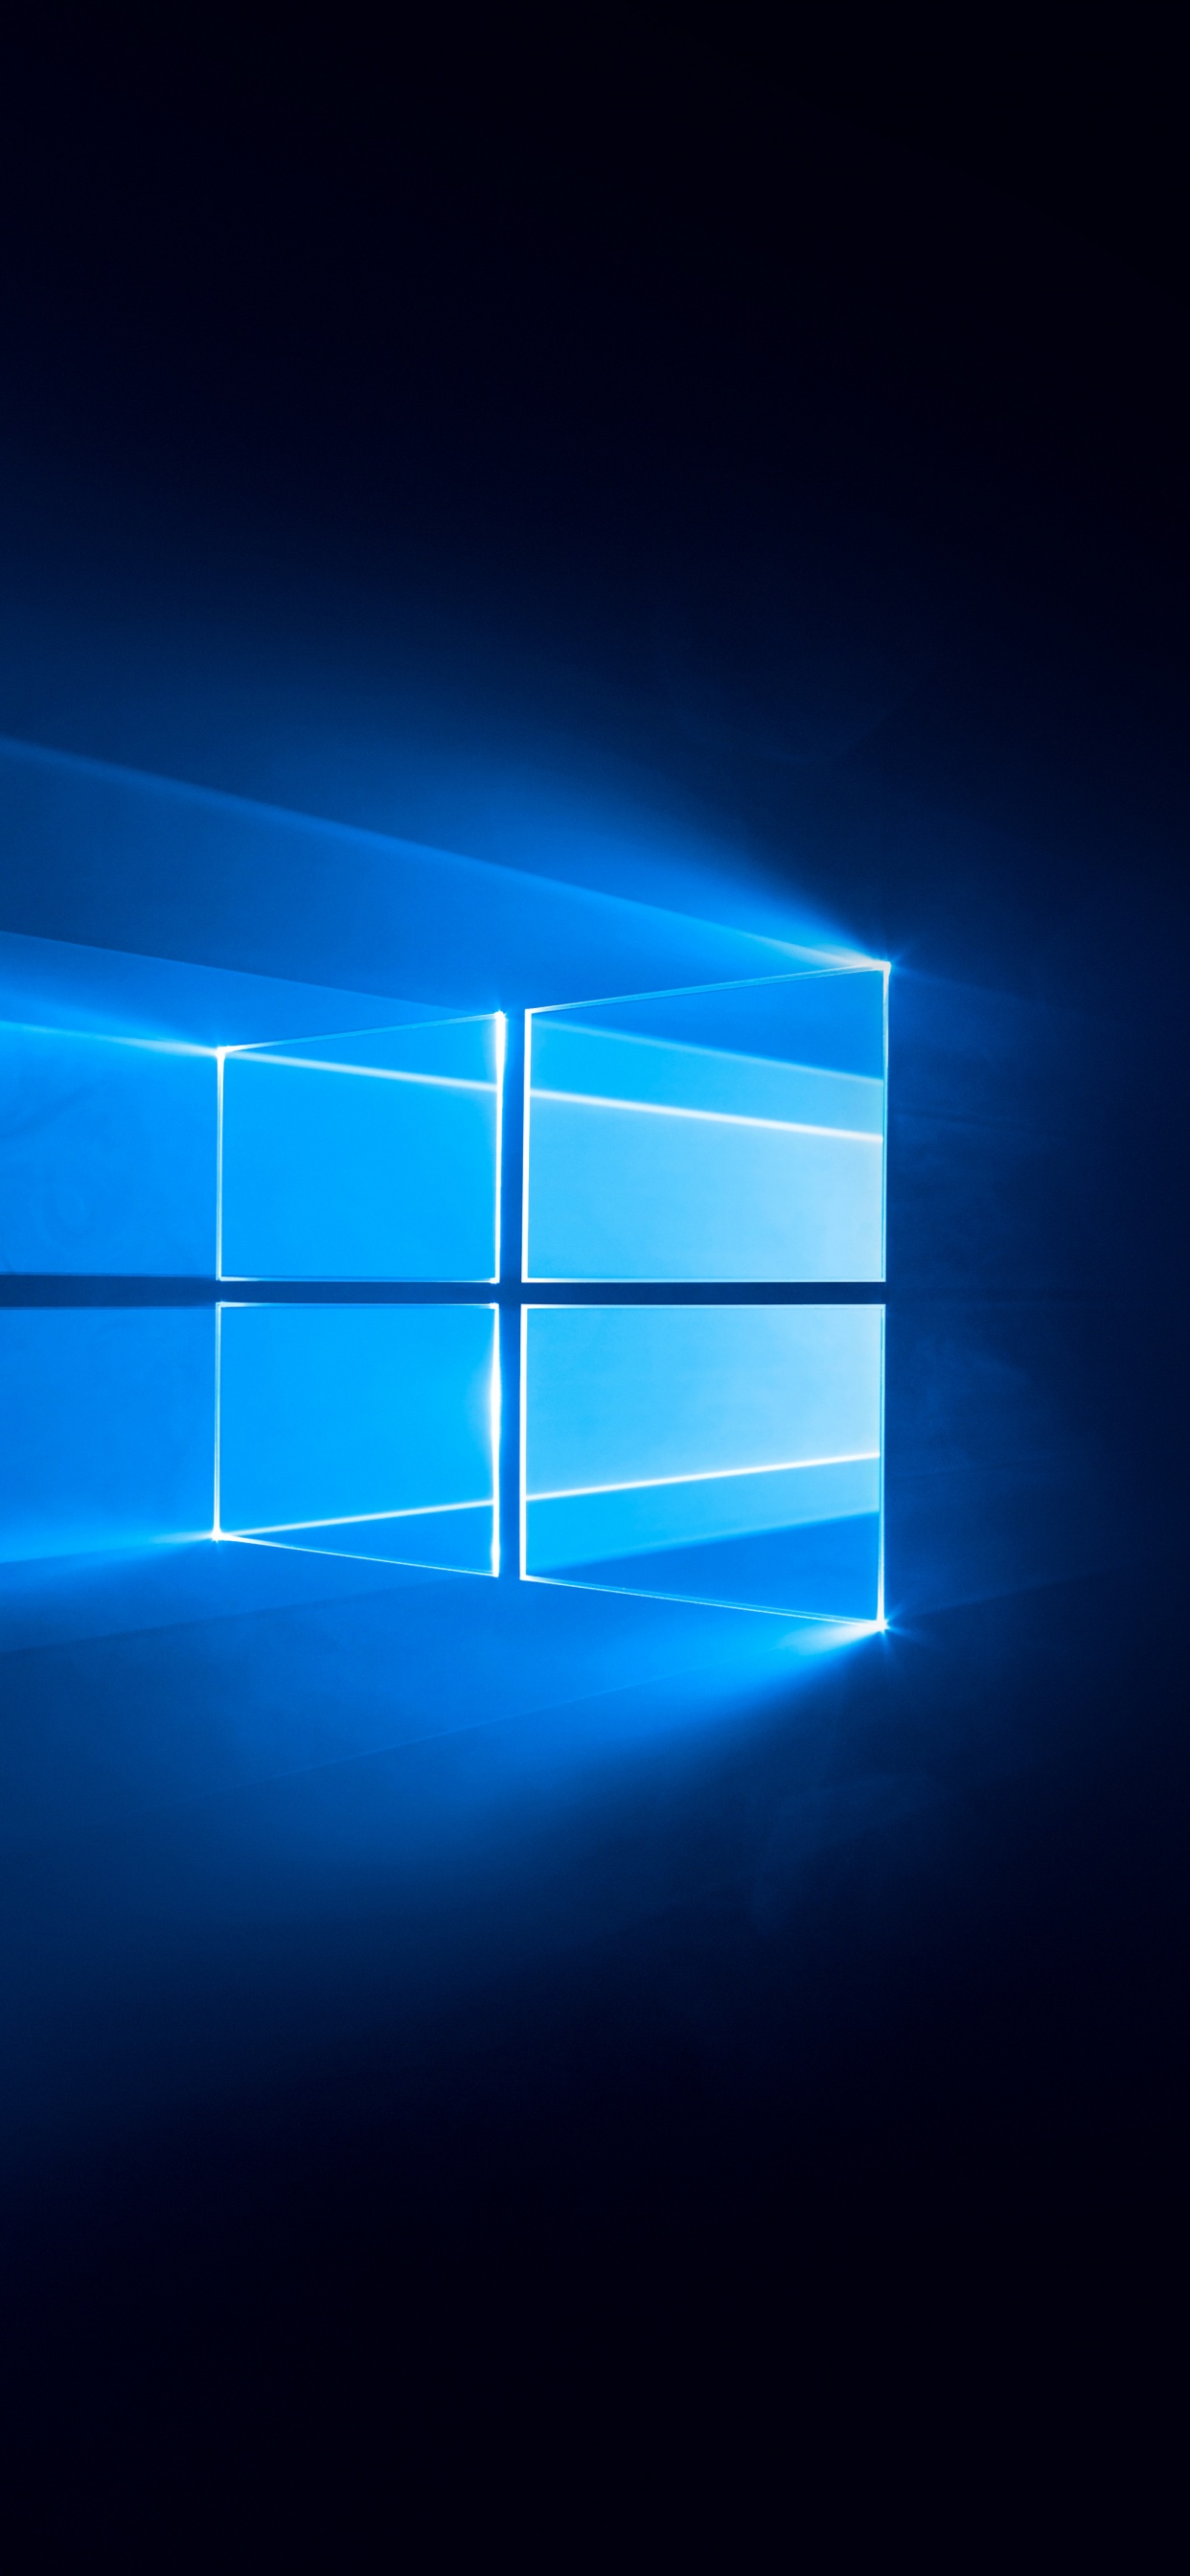 Hình nền Windows 10 4K, nền tối màu xanh, công nghệ, # 733 là một trong những hình nền độc đáo và có phong cách nhất cho Windows